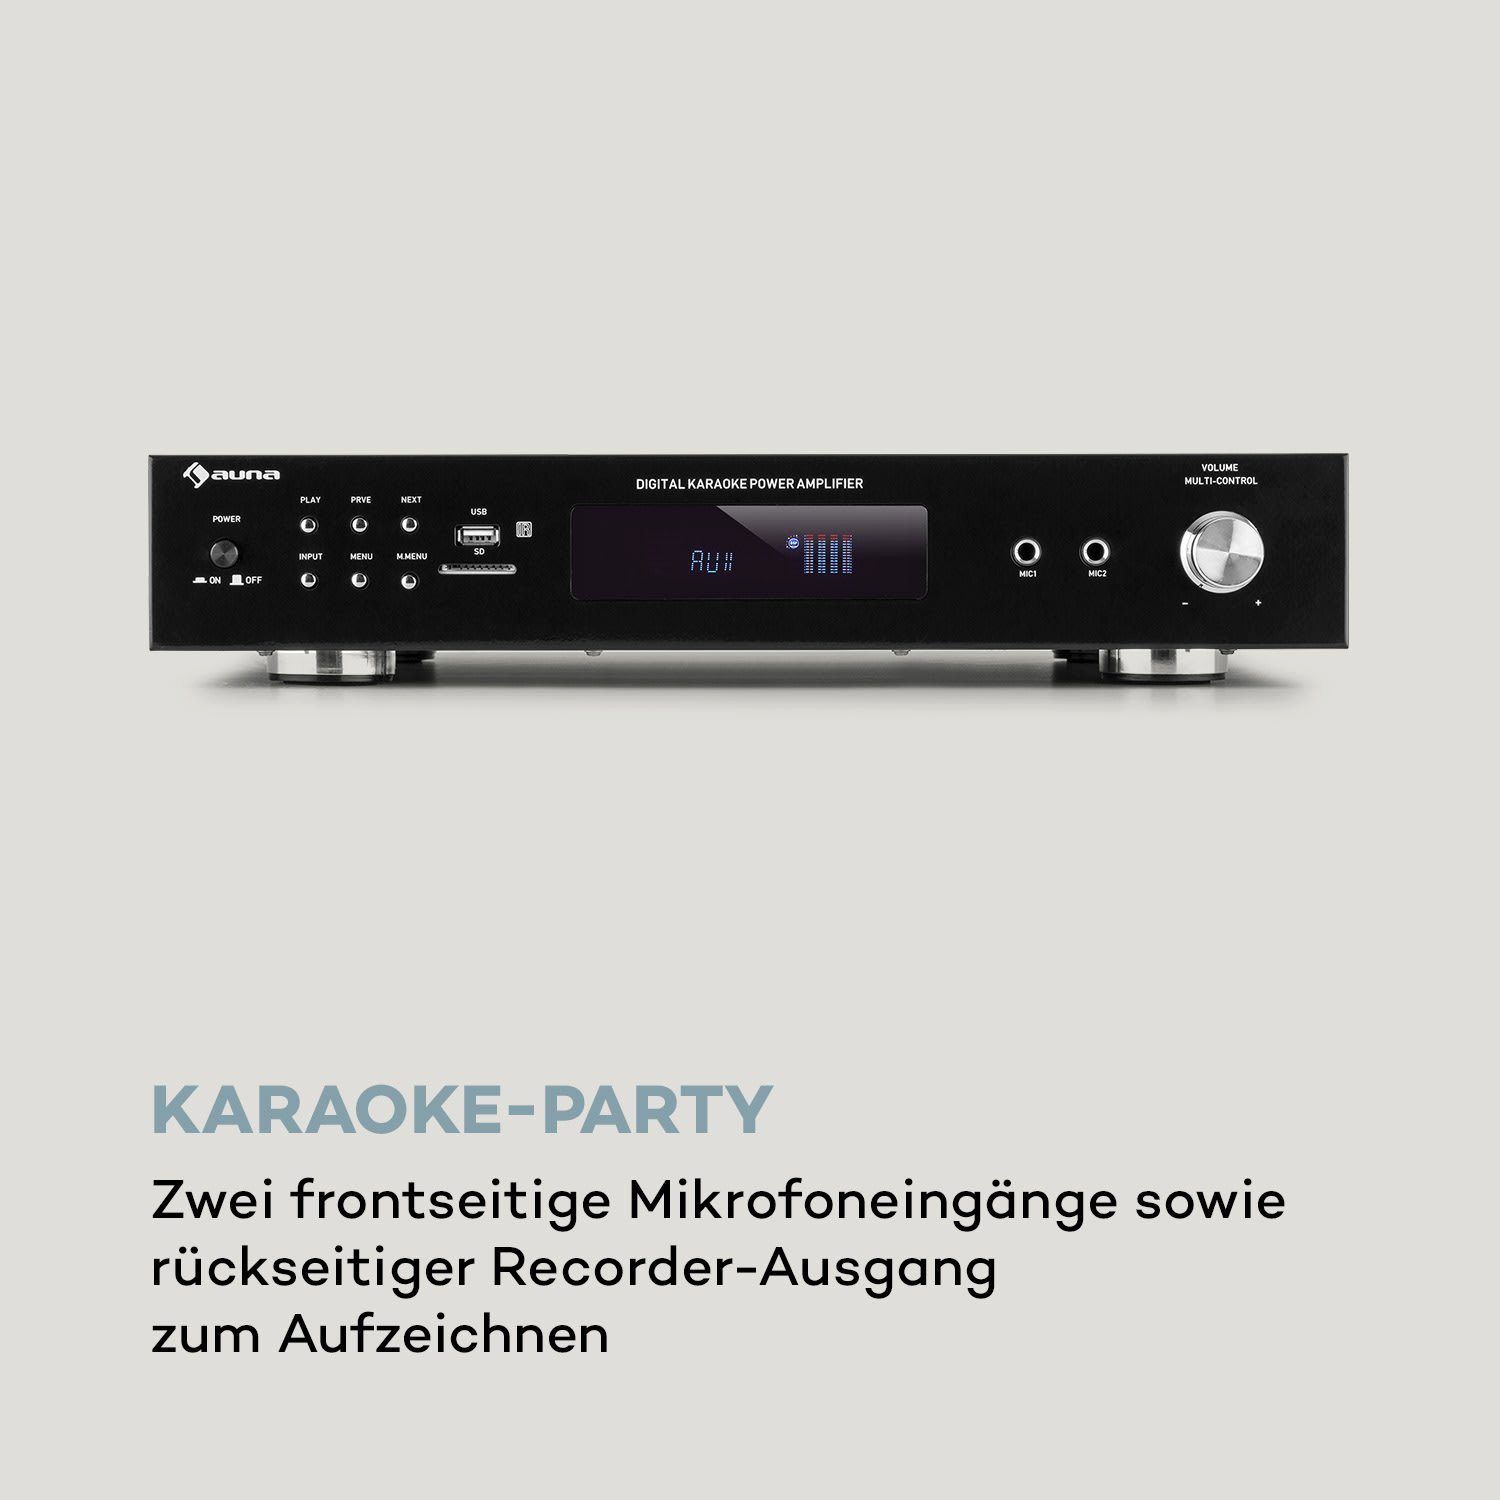 Audioverstärker BT AMP-9200 Auna Schwarz